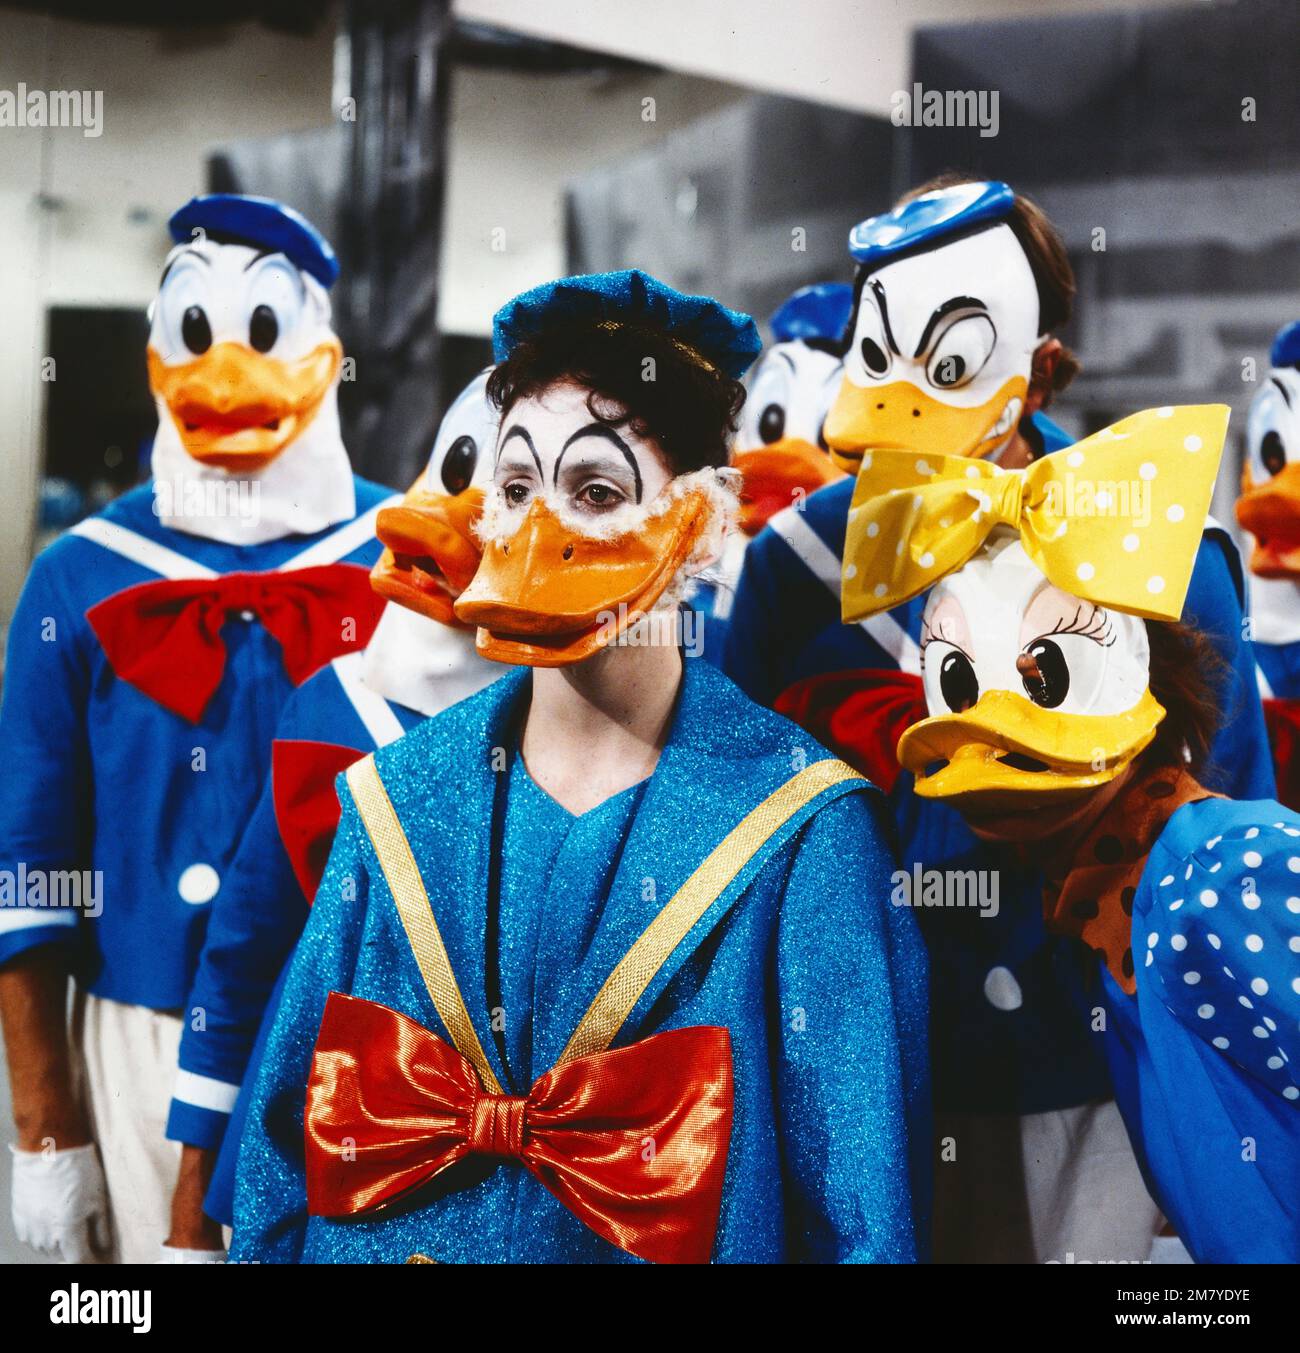 Für Donald - mit liebem Gruss, Arbeitstitel 'Quak', Fernsehspiel, Deutschland 1981, Regie: Cornelia Schlede, Darsteller: Szenenfoto Stock Photo